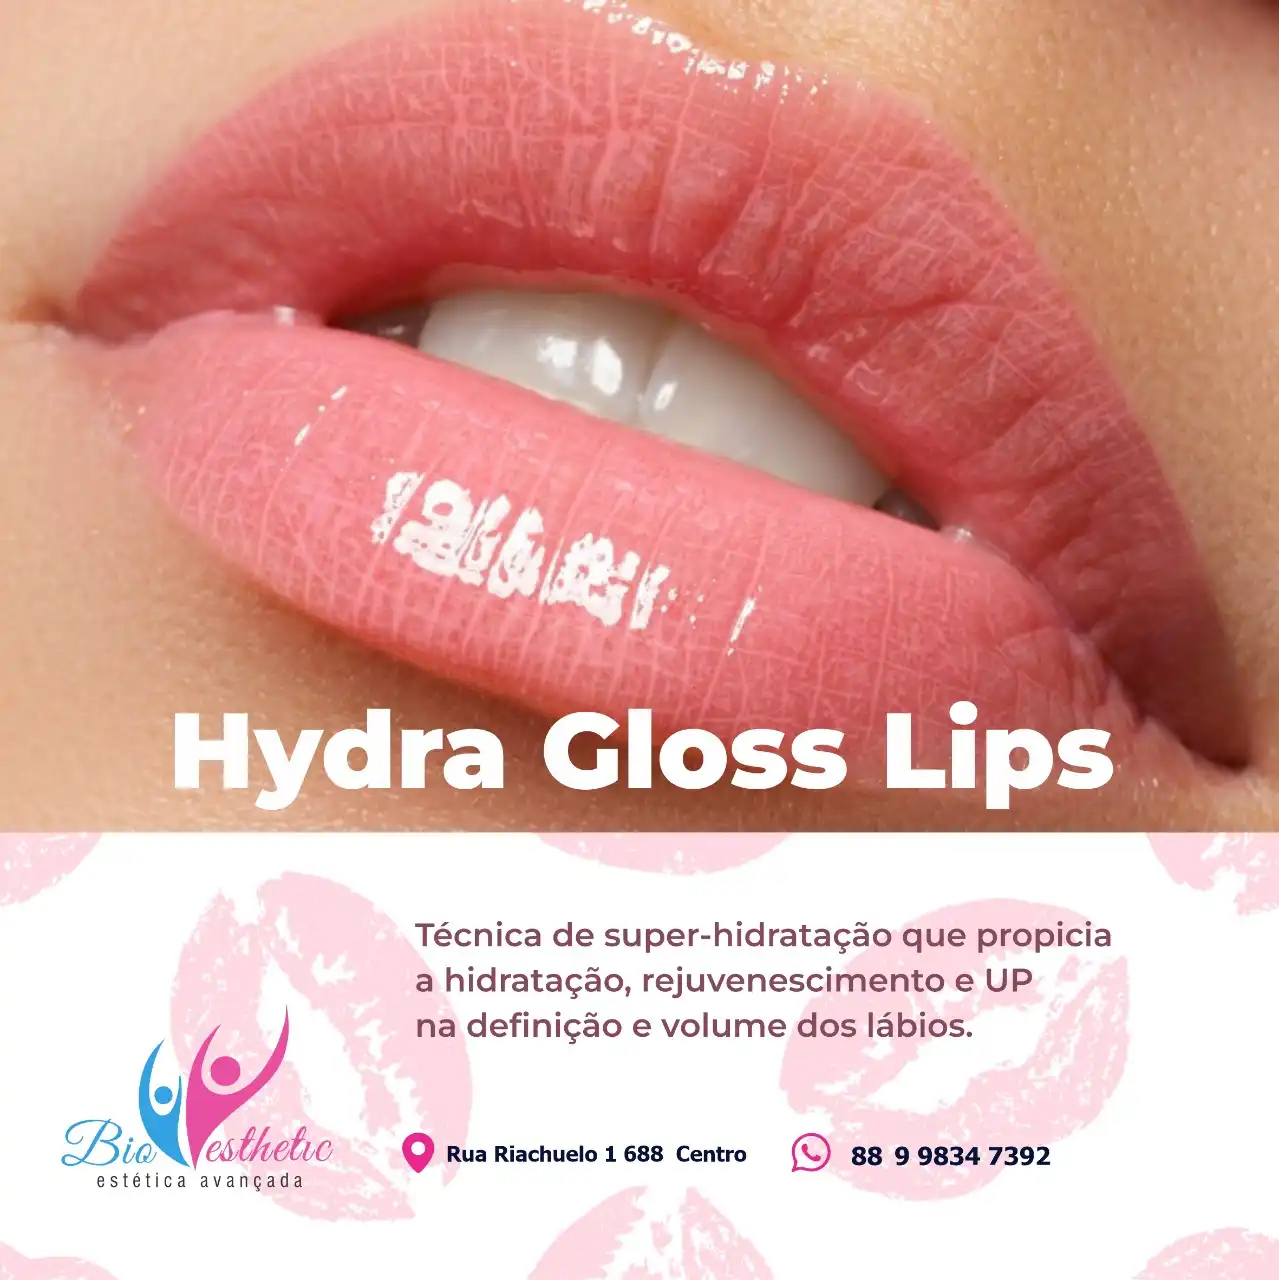 
Propaganda de Post  sobre Hydra Gloss Lips Estética Facial



